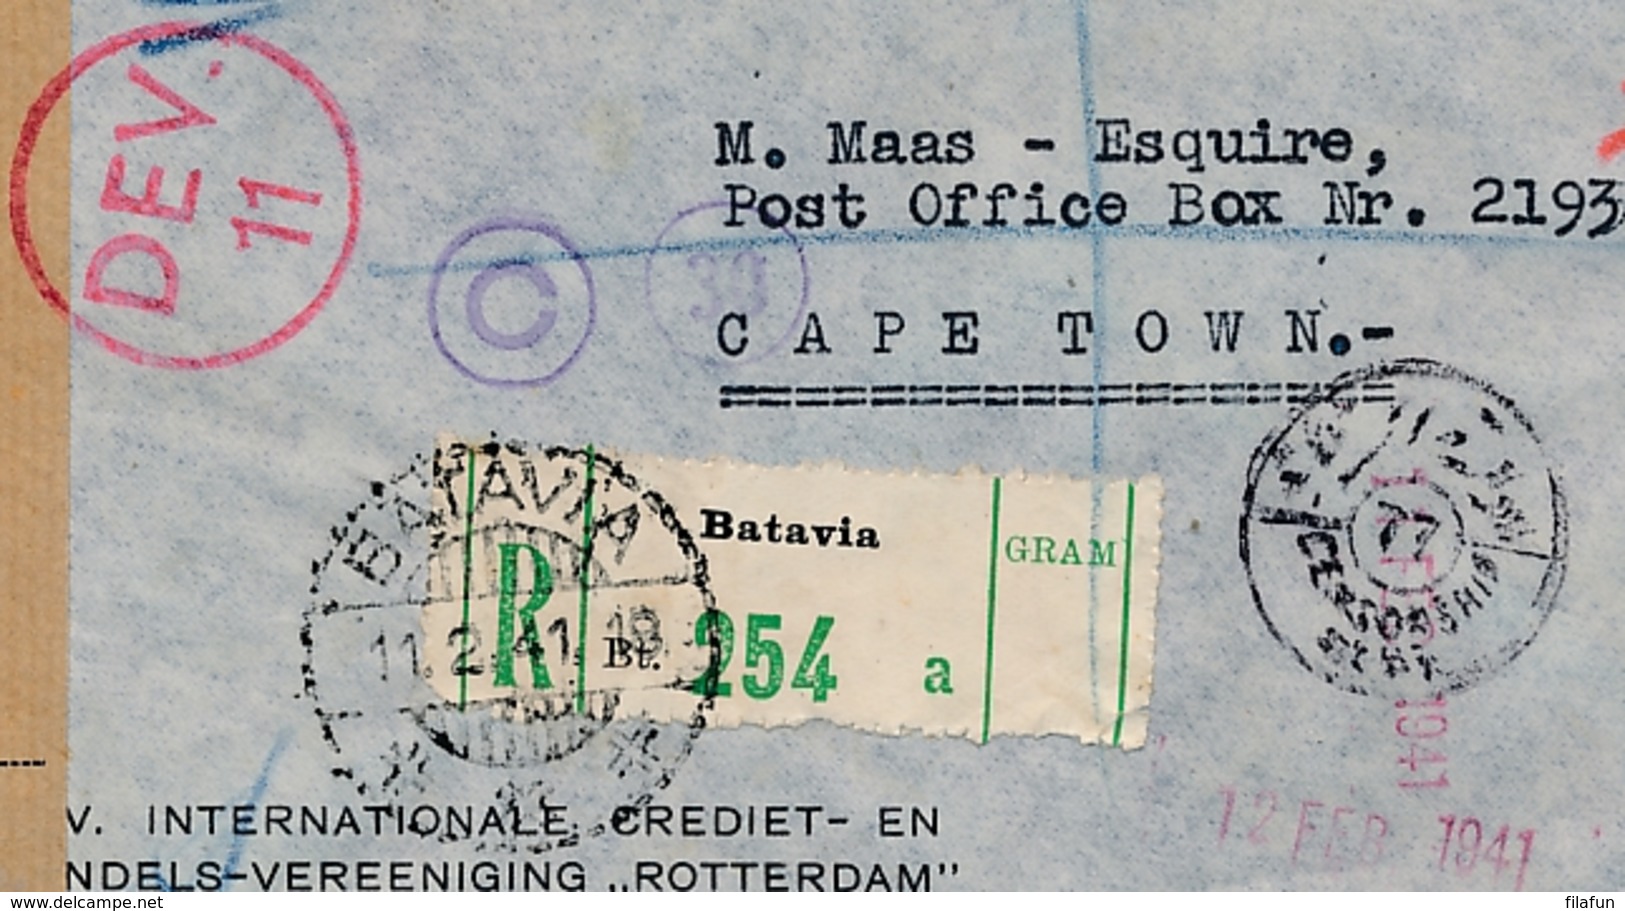 Nederlands Indië - 1941 - 1 Gld & 15 Cent Wilhelmina Op Censored Business Cover By KLM Van Batavia Naar Cape Town - Nederlands-Indië